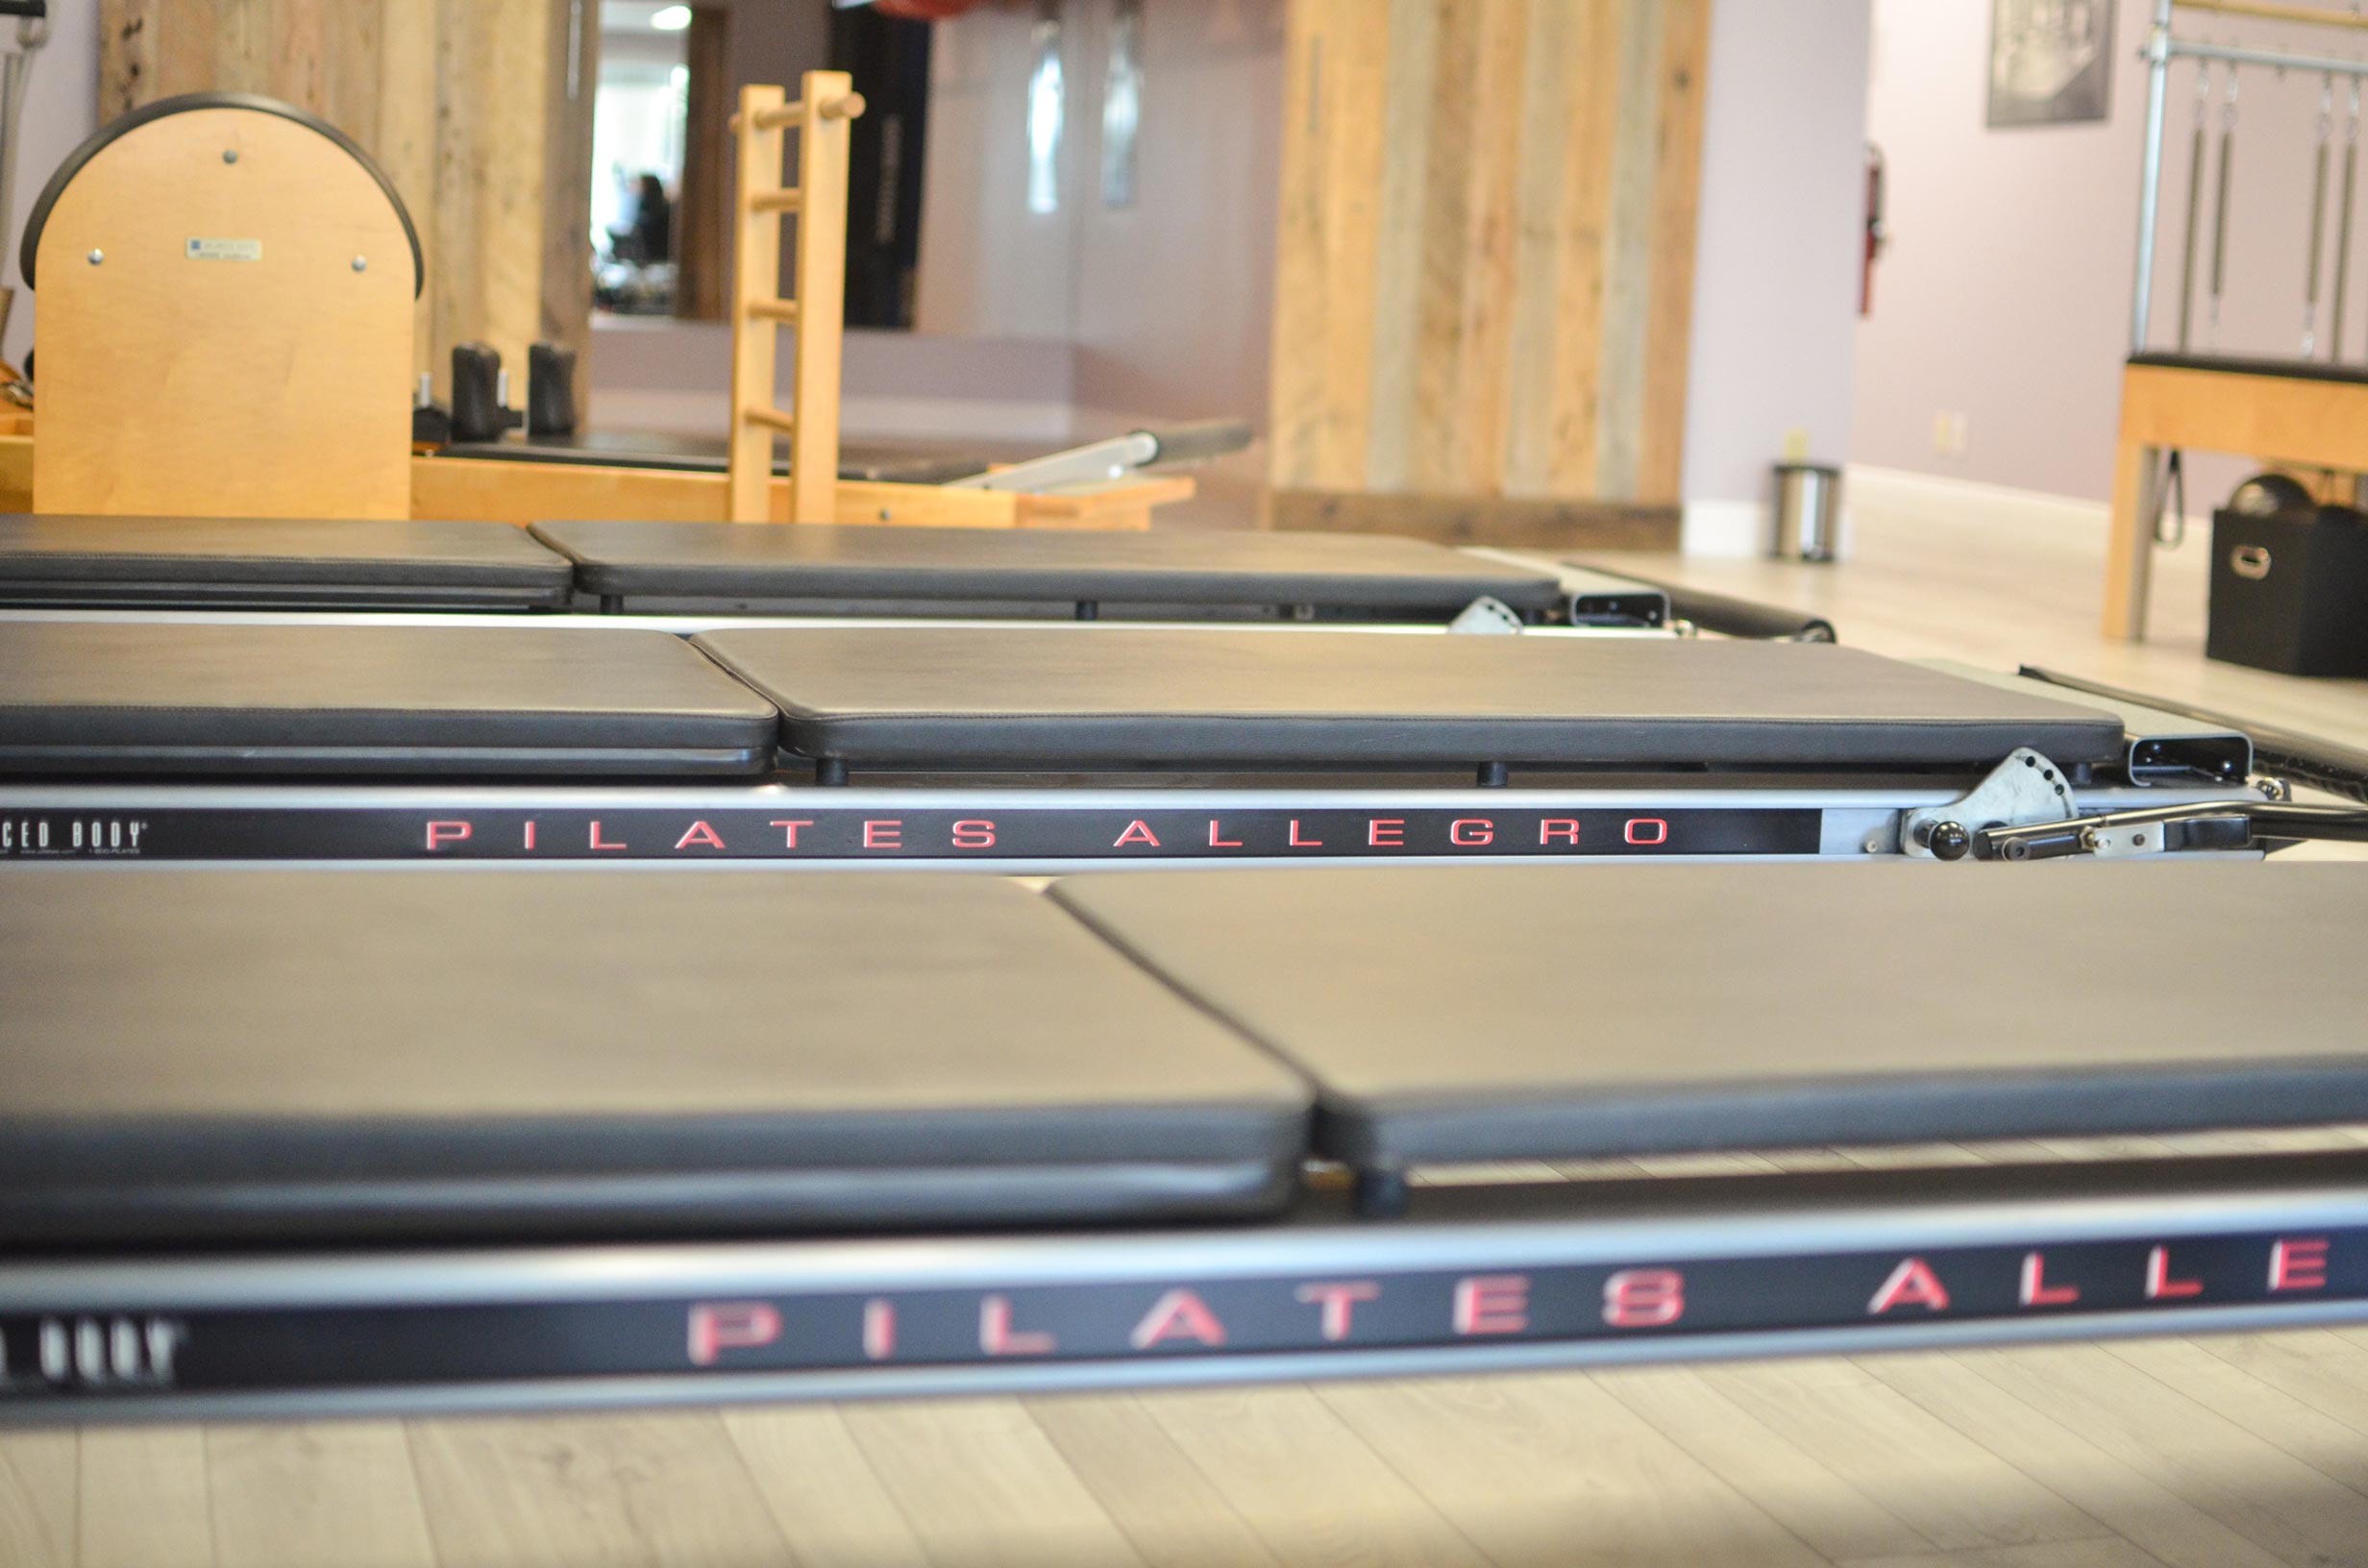 Pilates of Palm Beach - Pilates Yoga Center